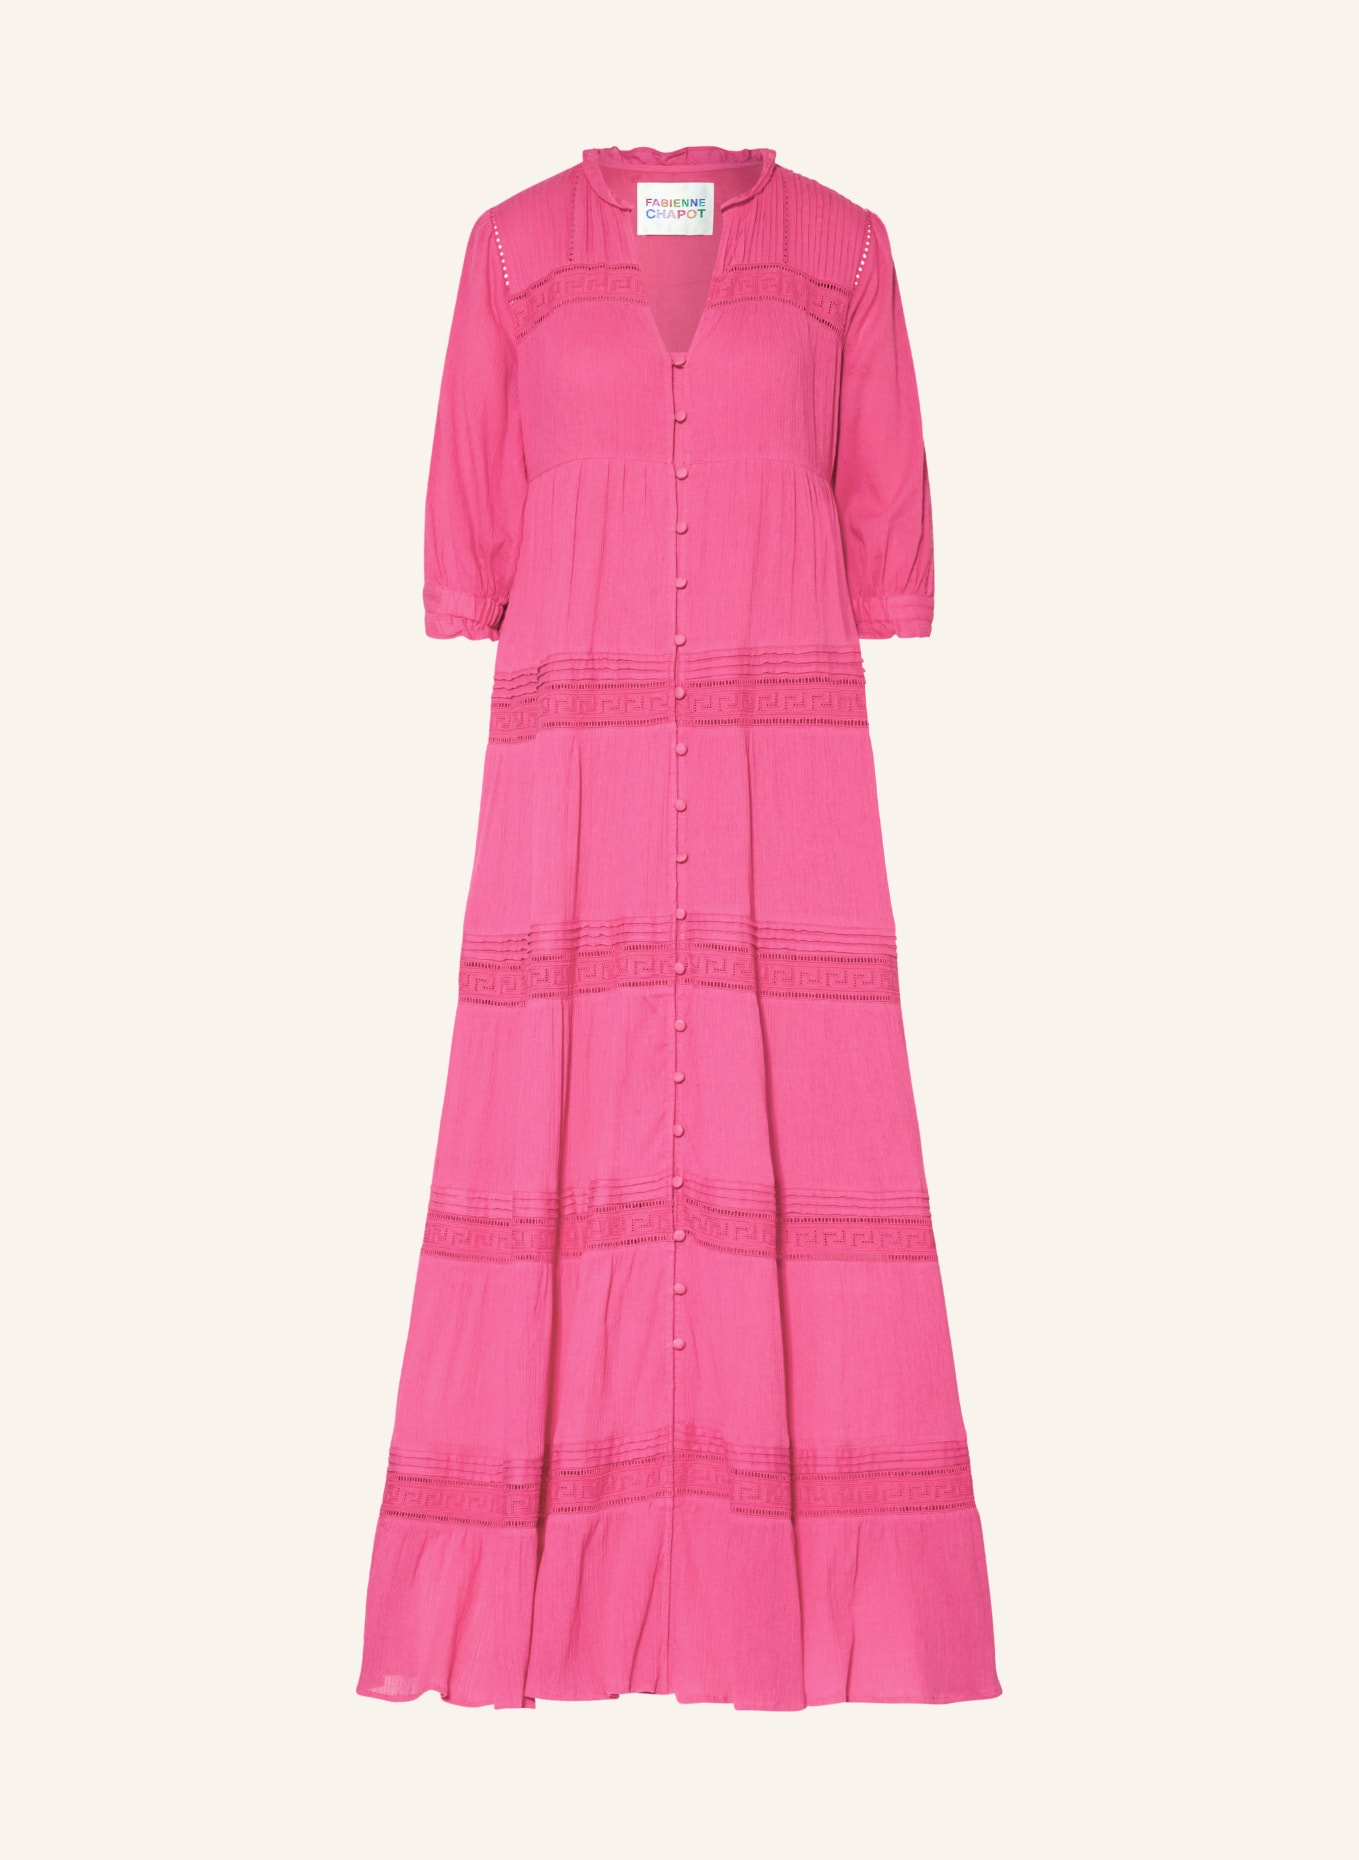 FABIENNE CHAPOT Kleid KIRA mit 3/4-Arm, Farbe: PINK (Bild 1)